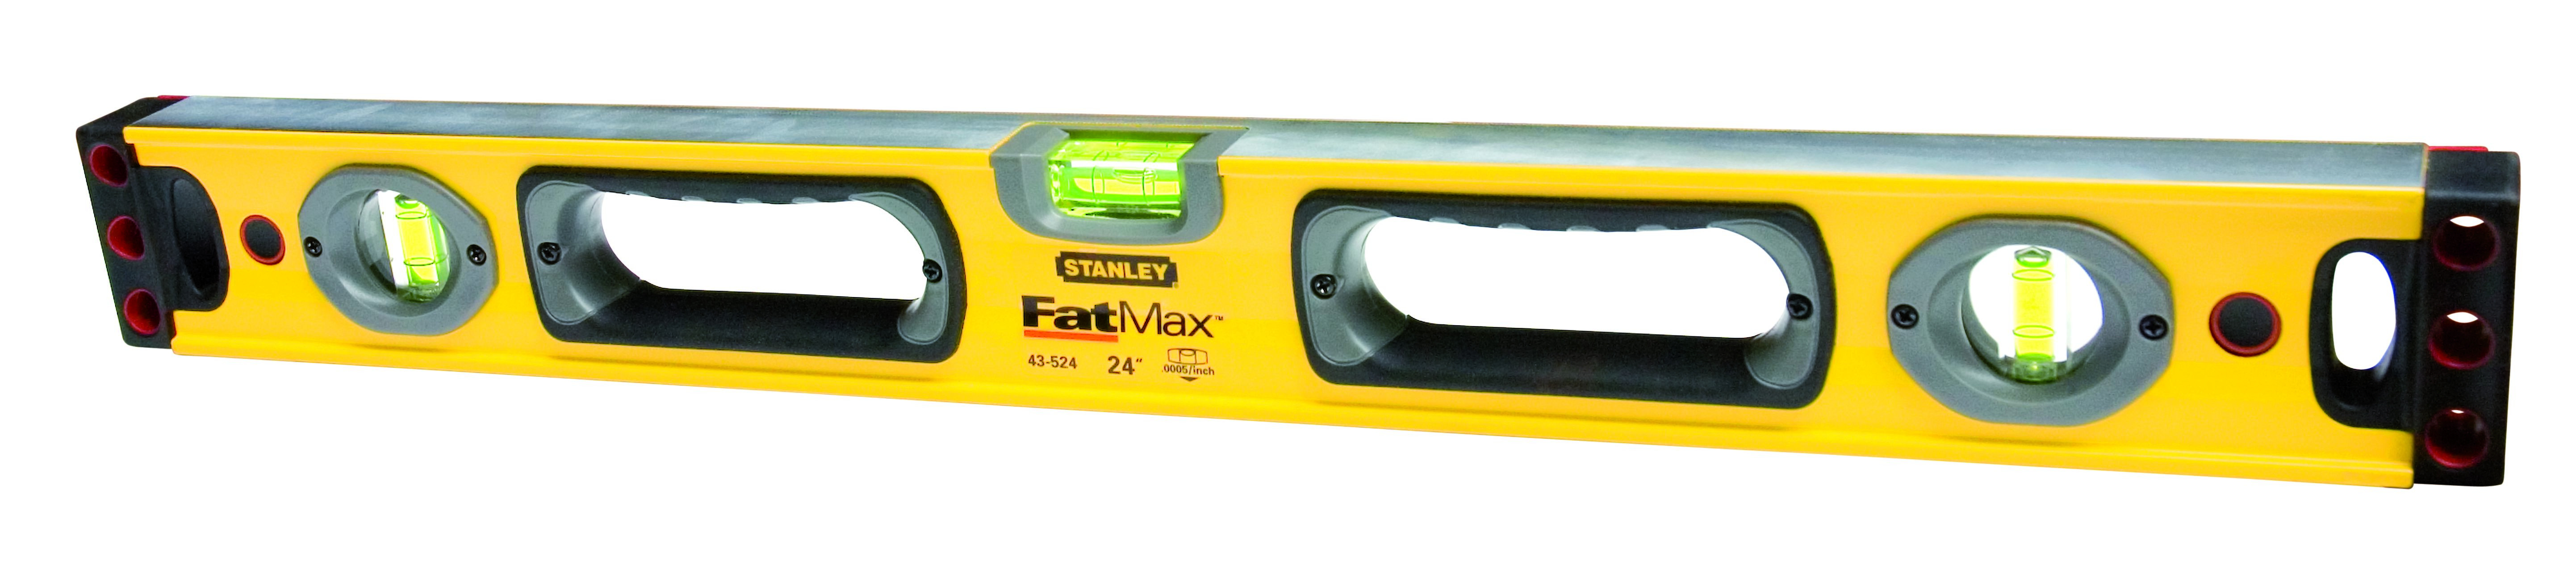 Niveau Tubulaire Magnetique 90Cm Fatmax Stanley 1-43-537 